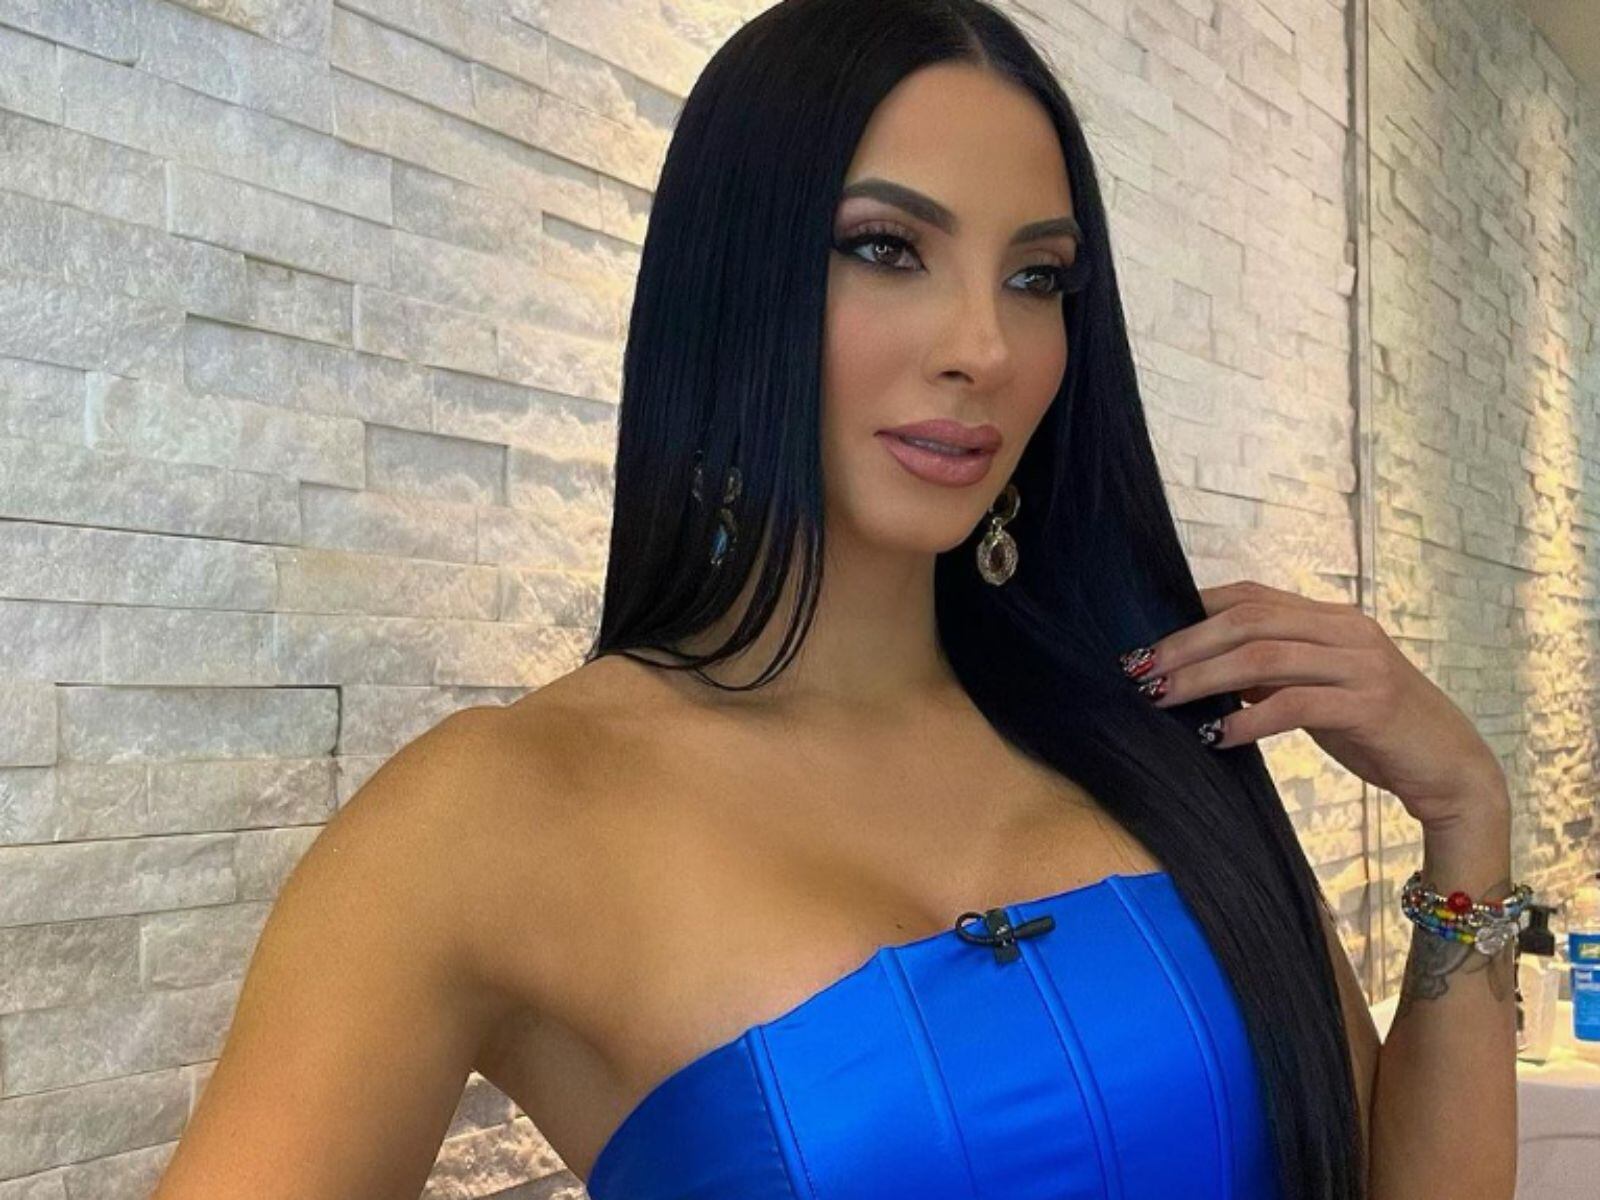 La modelo posa con un vestido azul  (Patricia Corcino / Instagram)